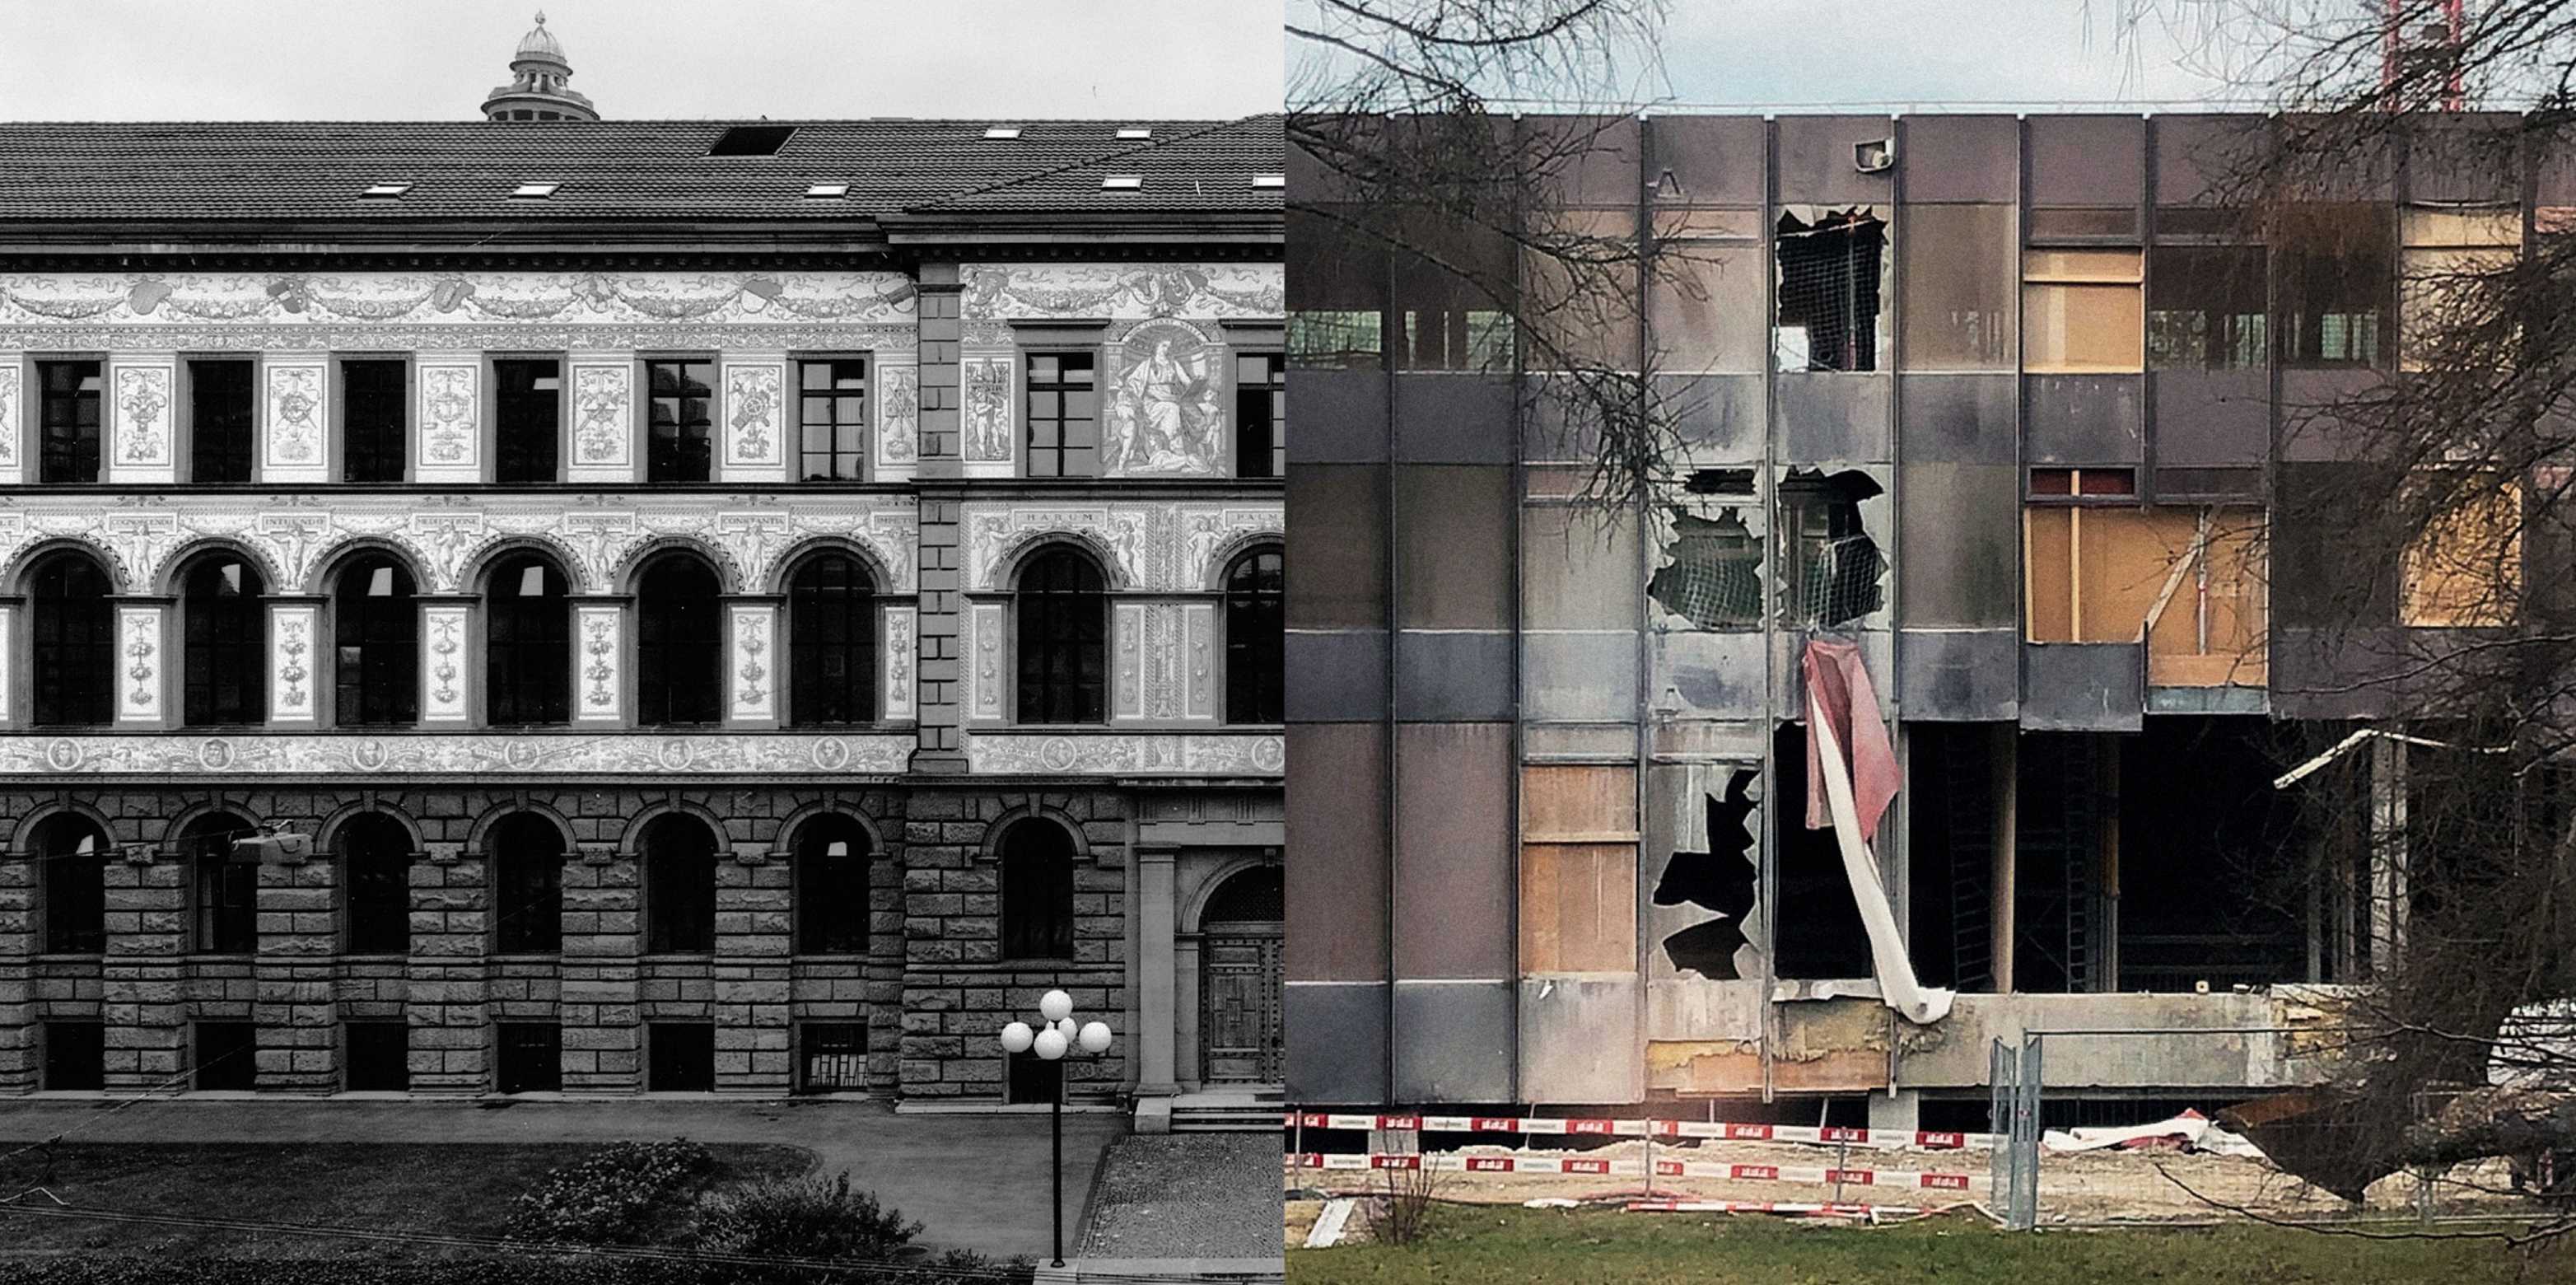 Schwarz-weiss-Aufnahme eines alten ETH-Gebäudes ist einer Fassade eines anderen ETH-Gebäudes gegenüber gestellt, dass gerade abgebrochen wird.